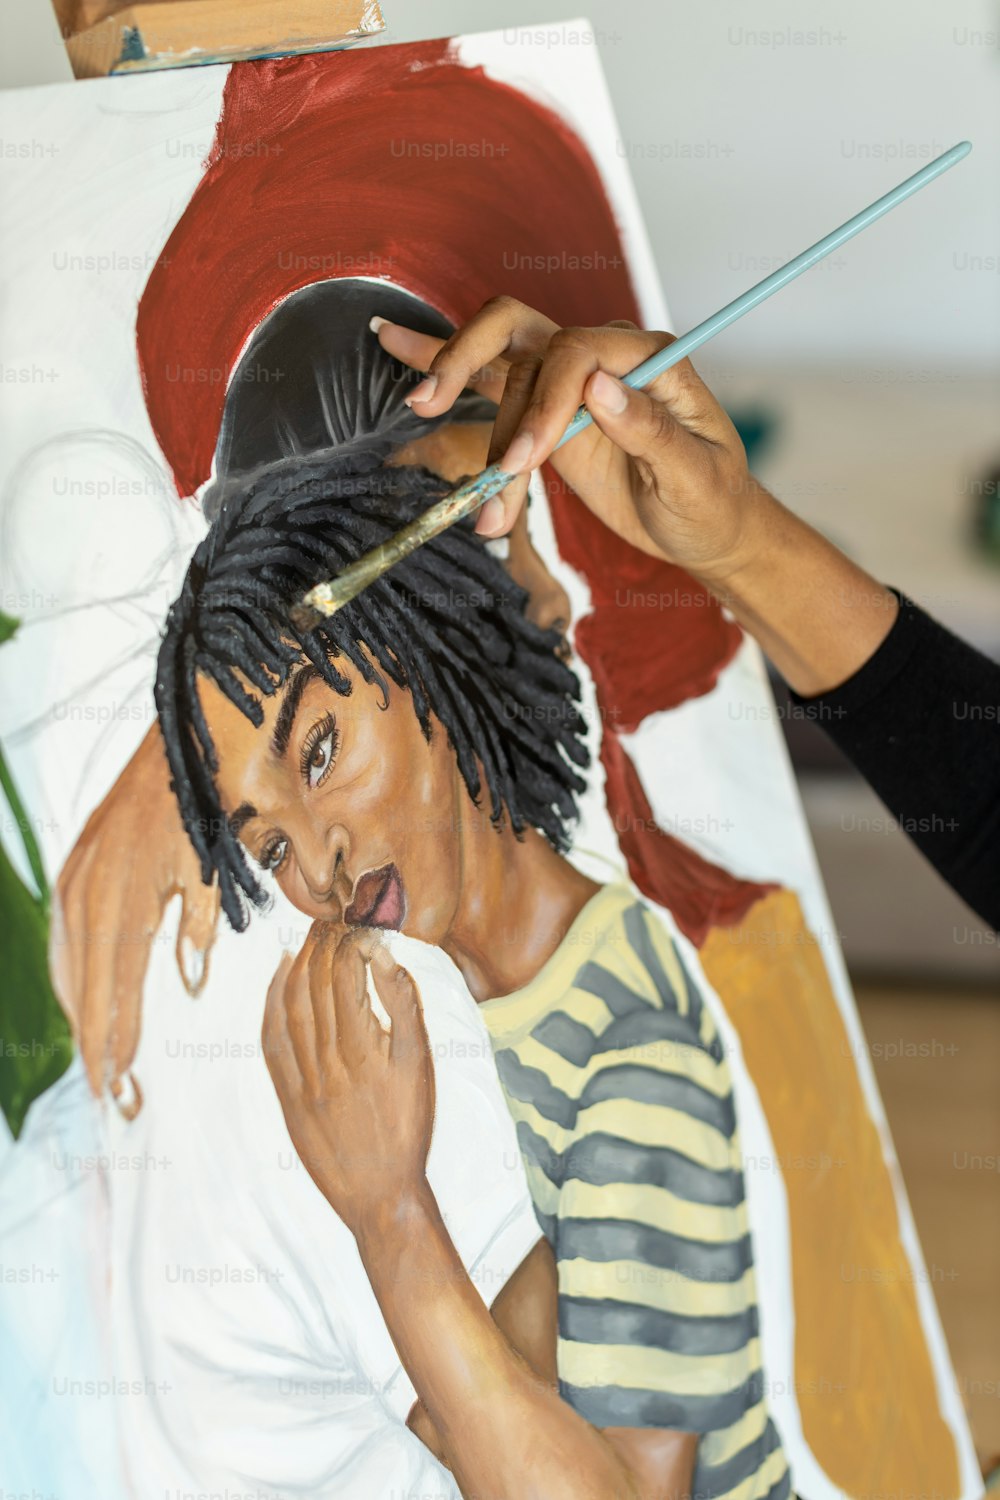 Una mujer está pintando un cuadro de un hombre con rastas